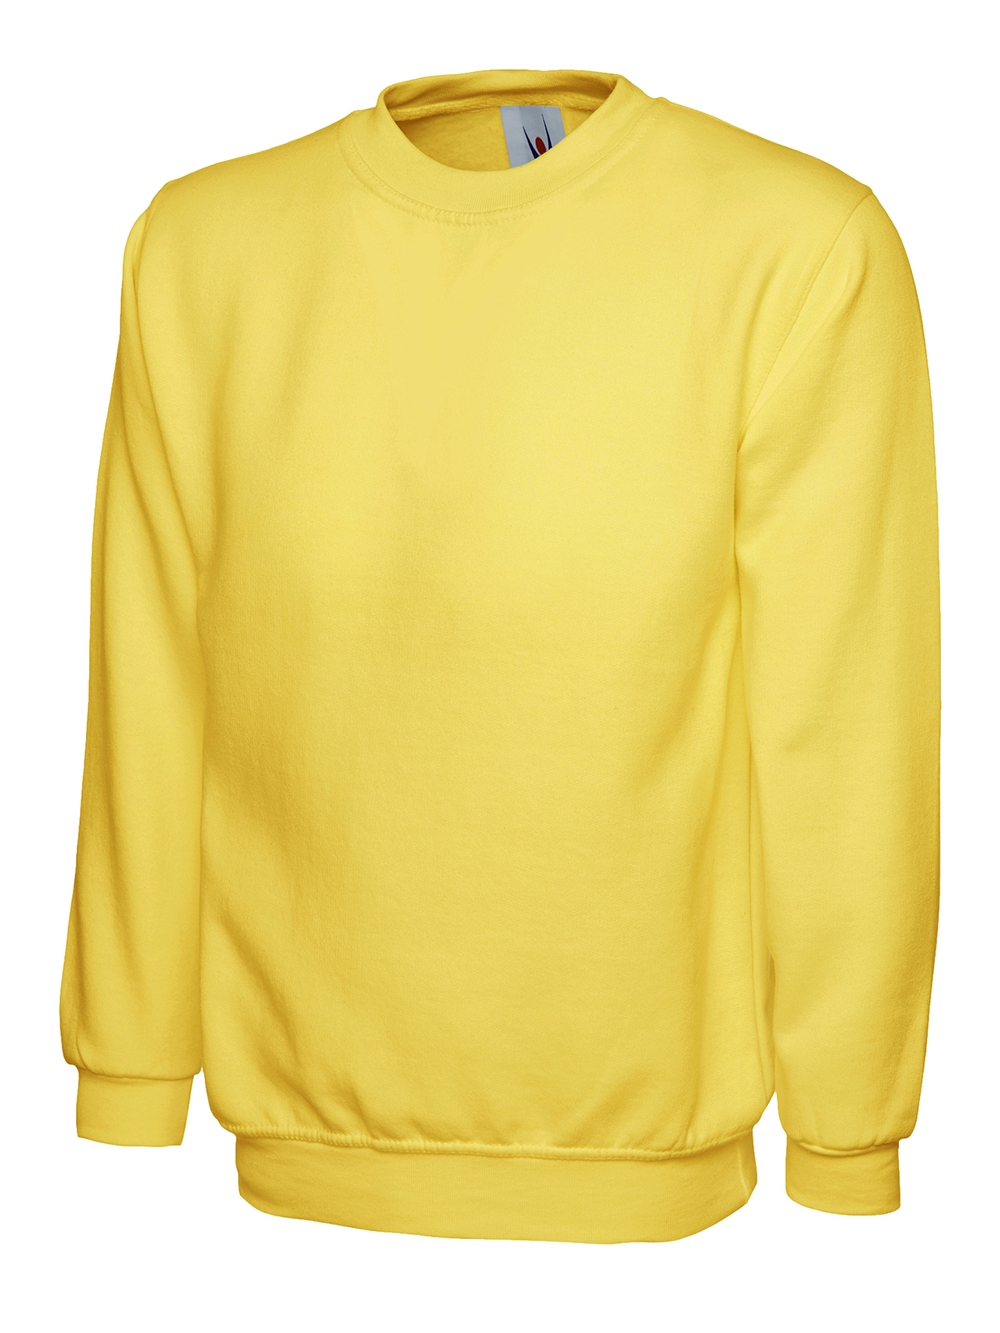 Yellowsweatshirt